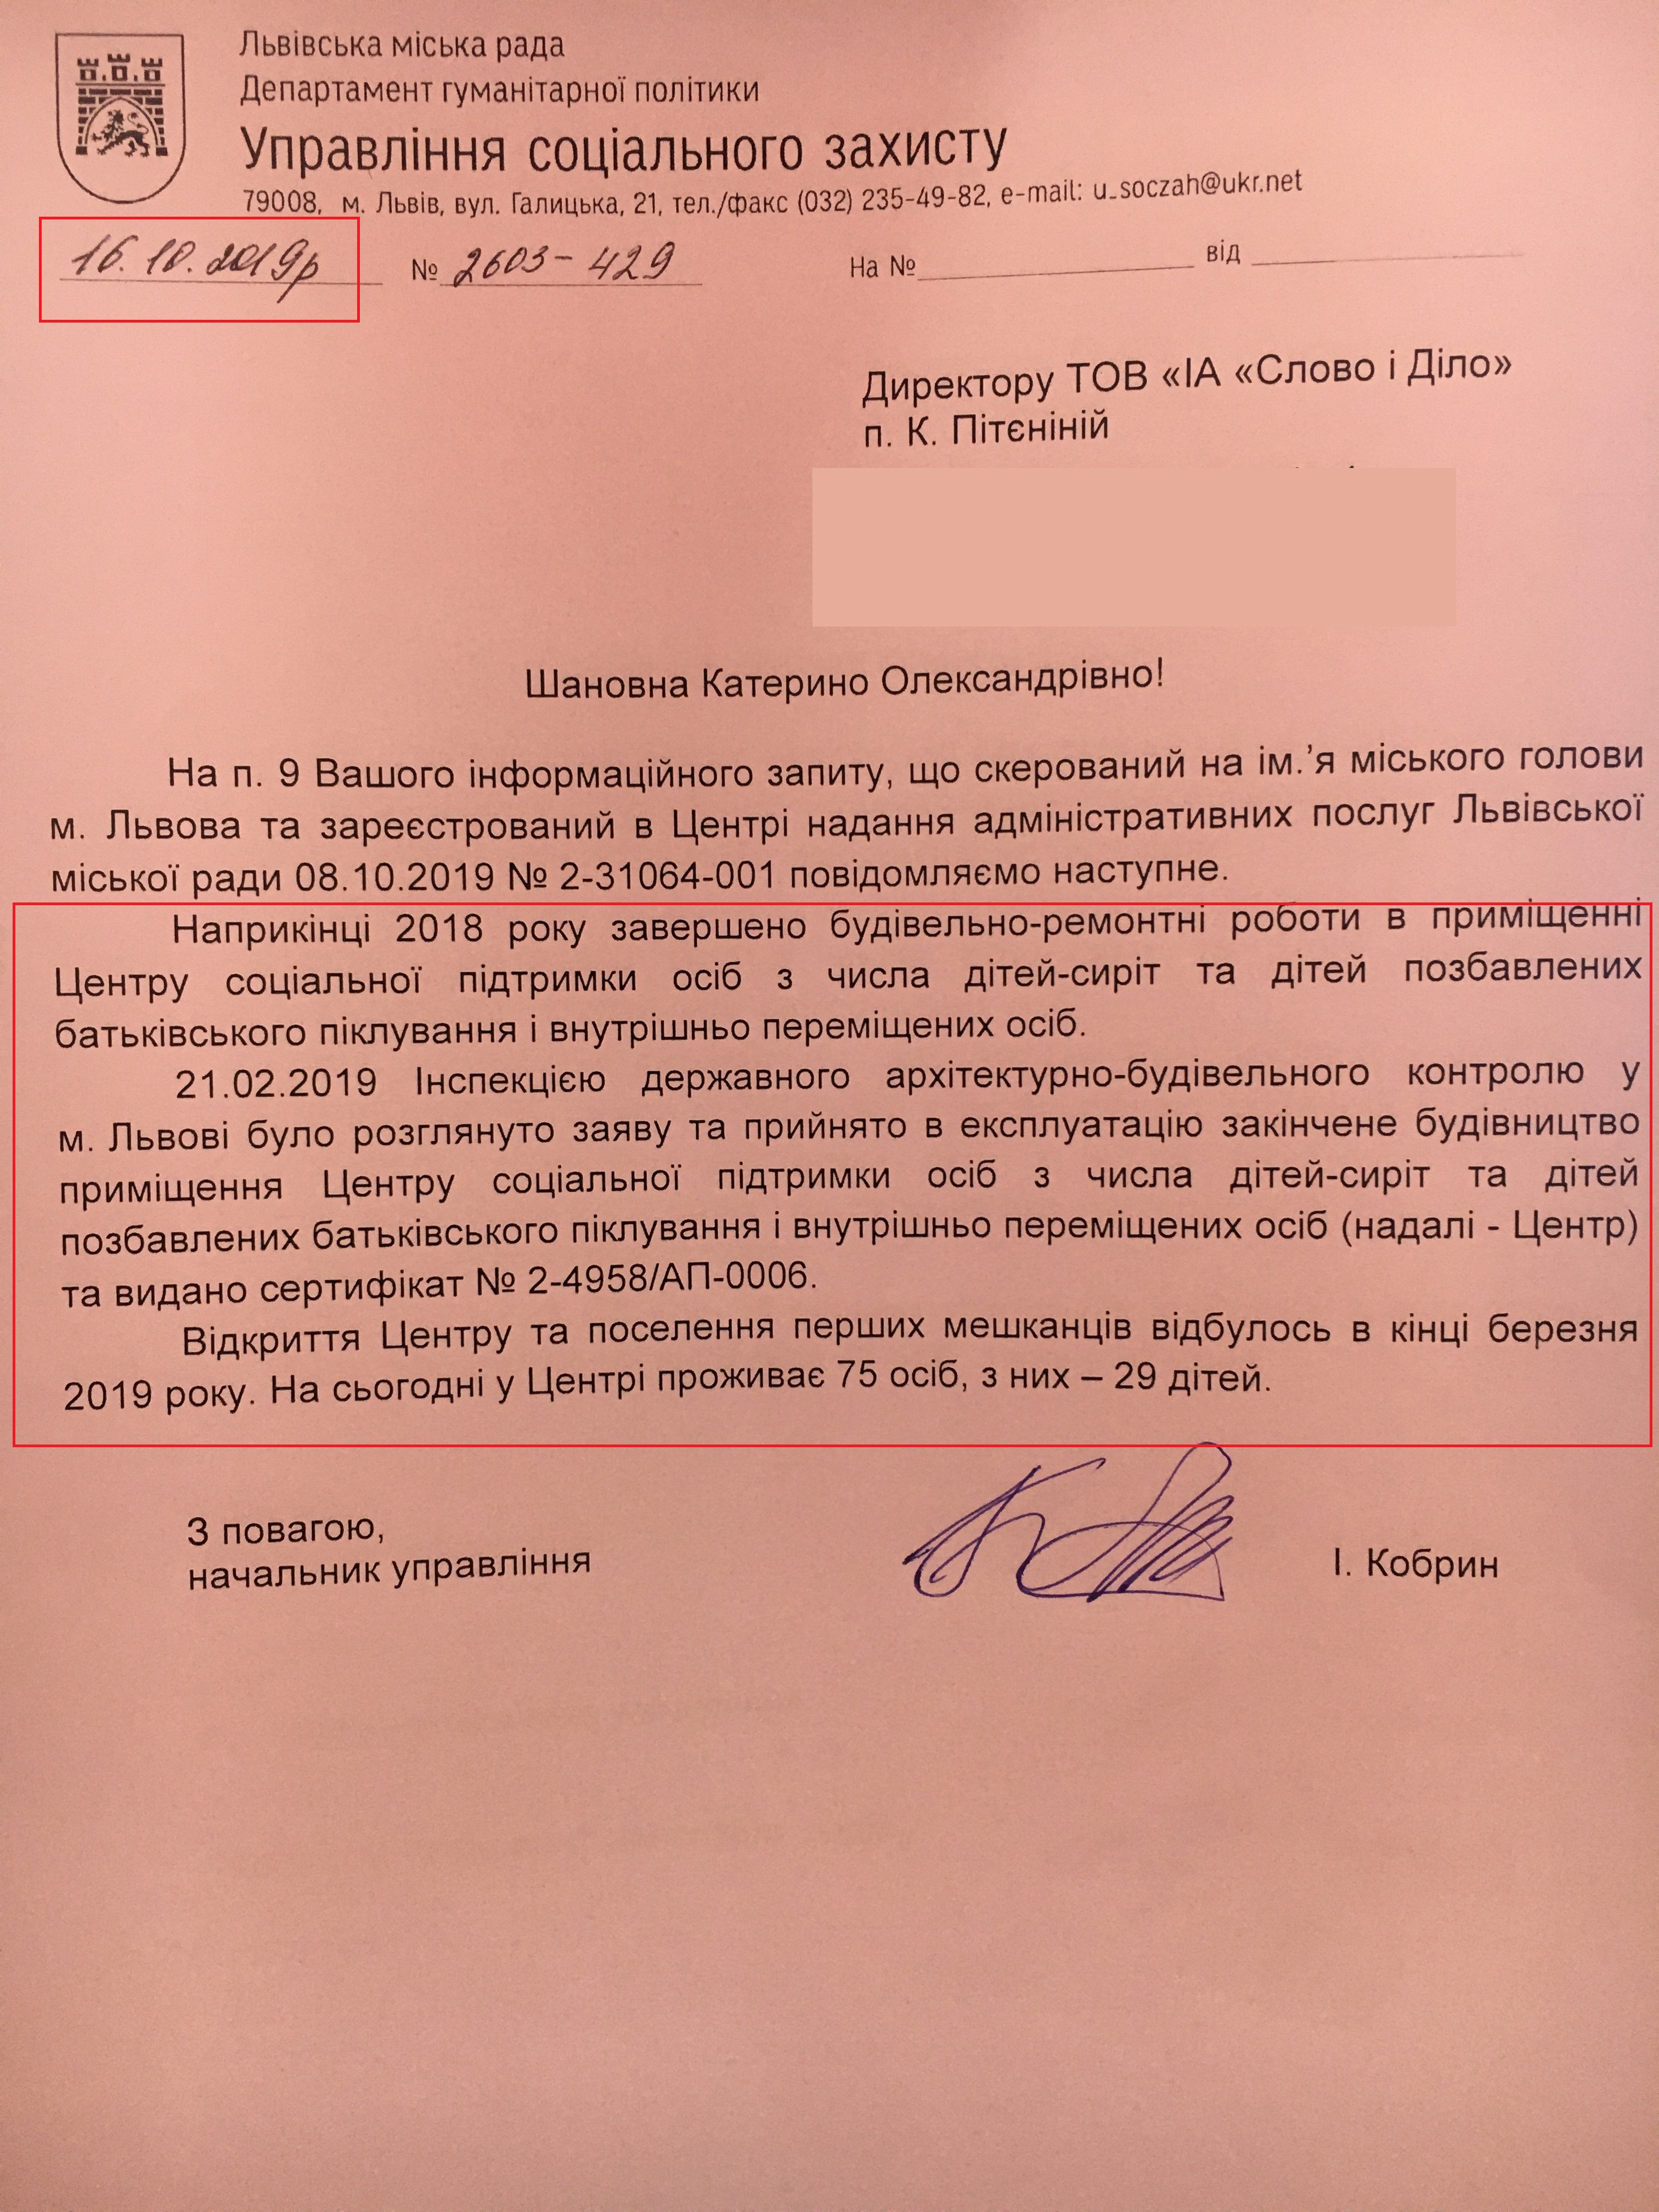 Лист Управління соціального захисту Львівської міської ради від 16 жовтня 2019 року